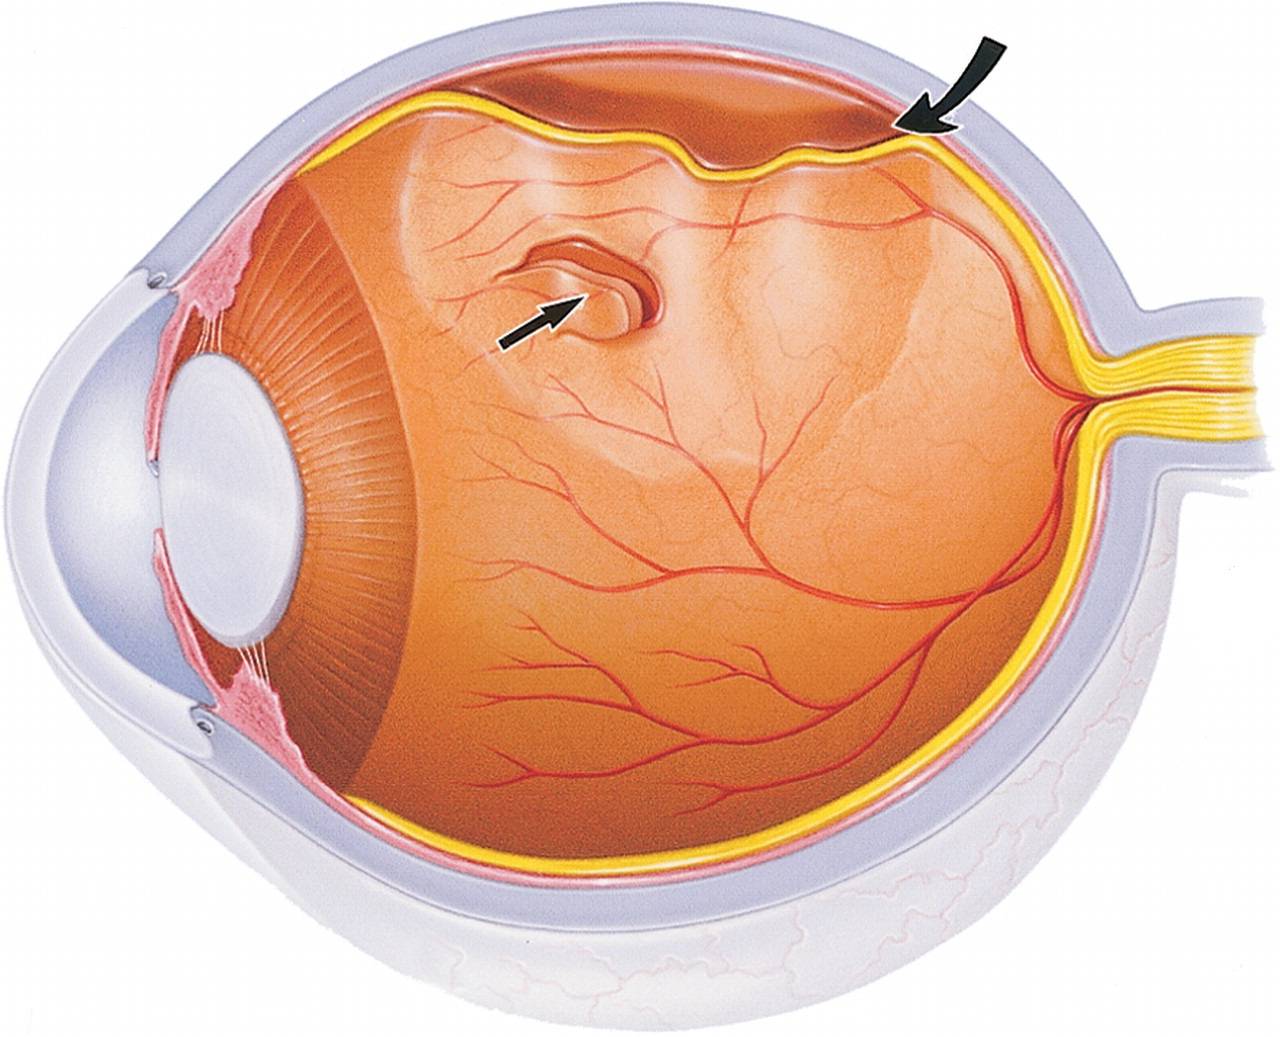 Операция на сетчатке глаза - как делают коагуляцию лазером и пломбирование, как проходит послеоперационный период и что нельзя после